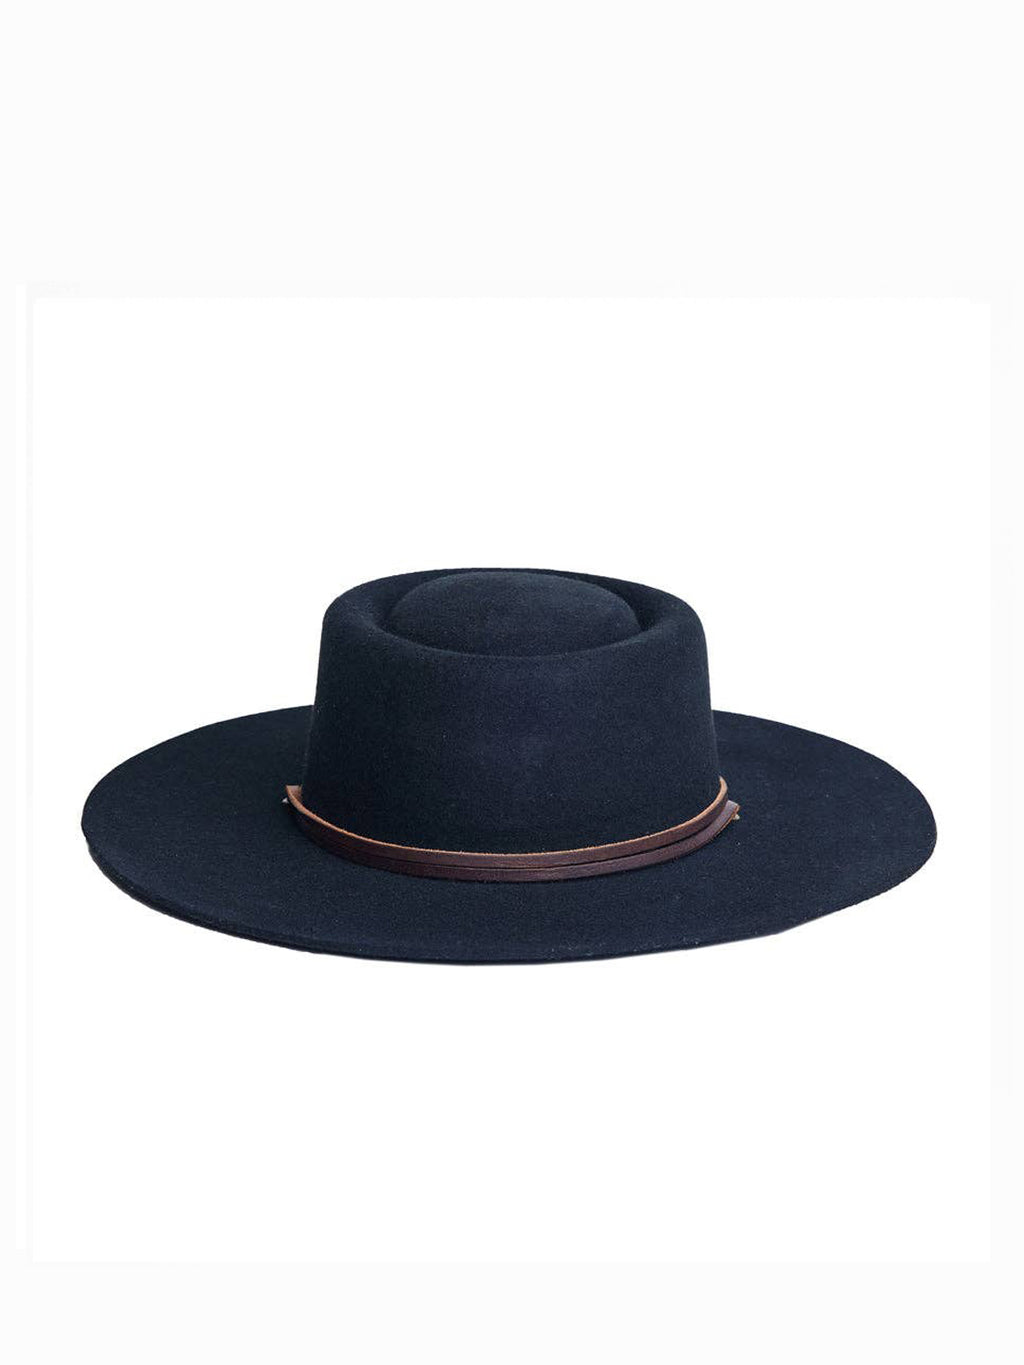 Zoila Wool Boater Hat